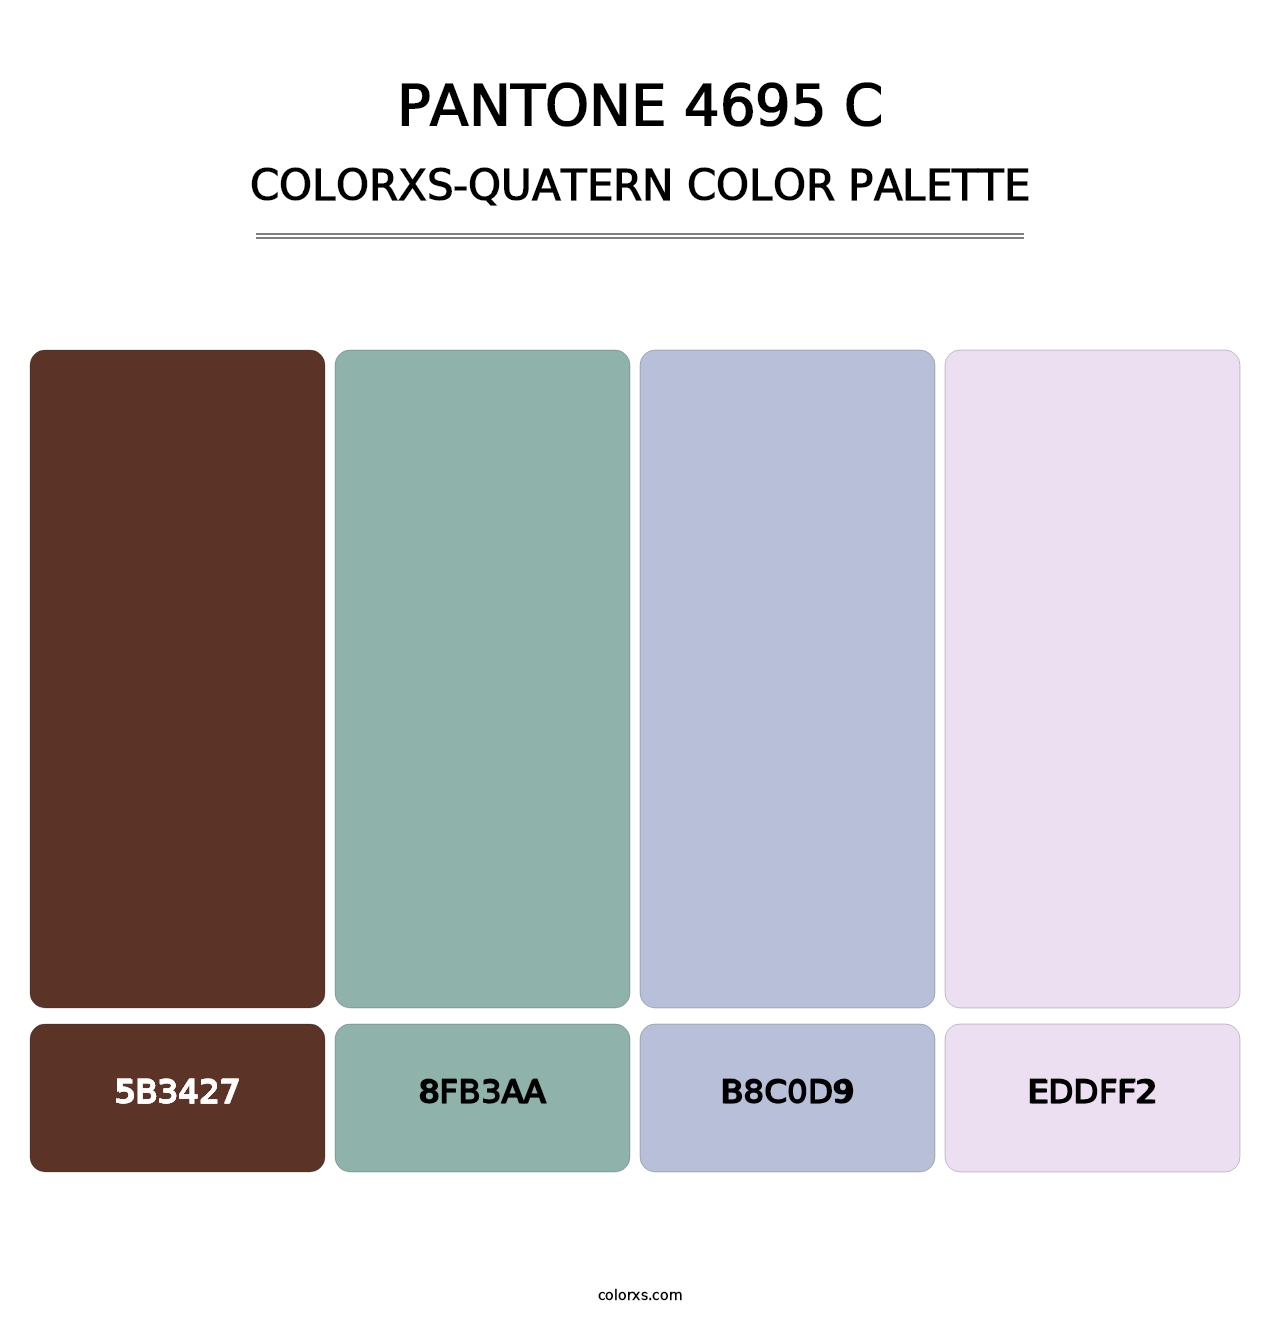 PANTONE 4695 C - Colorxs Quatern Palette